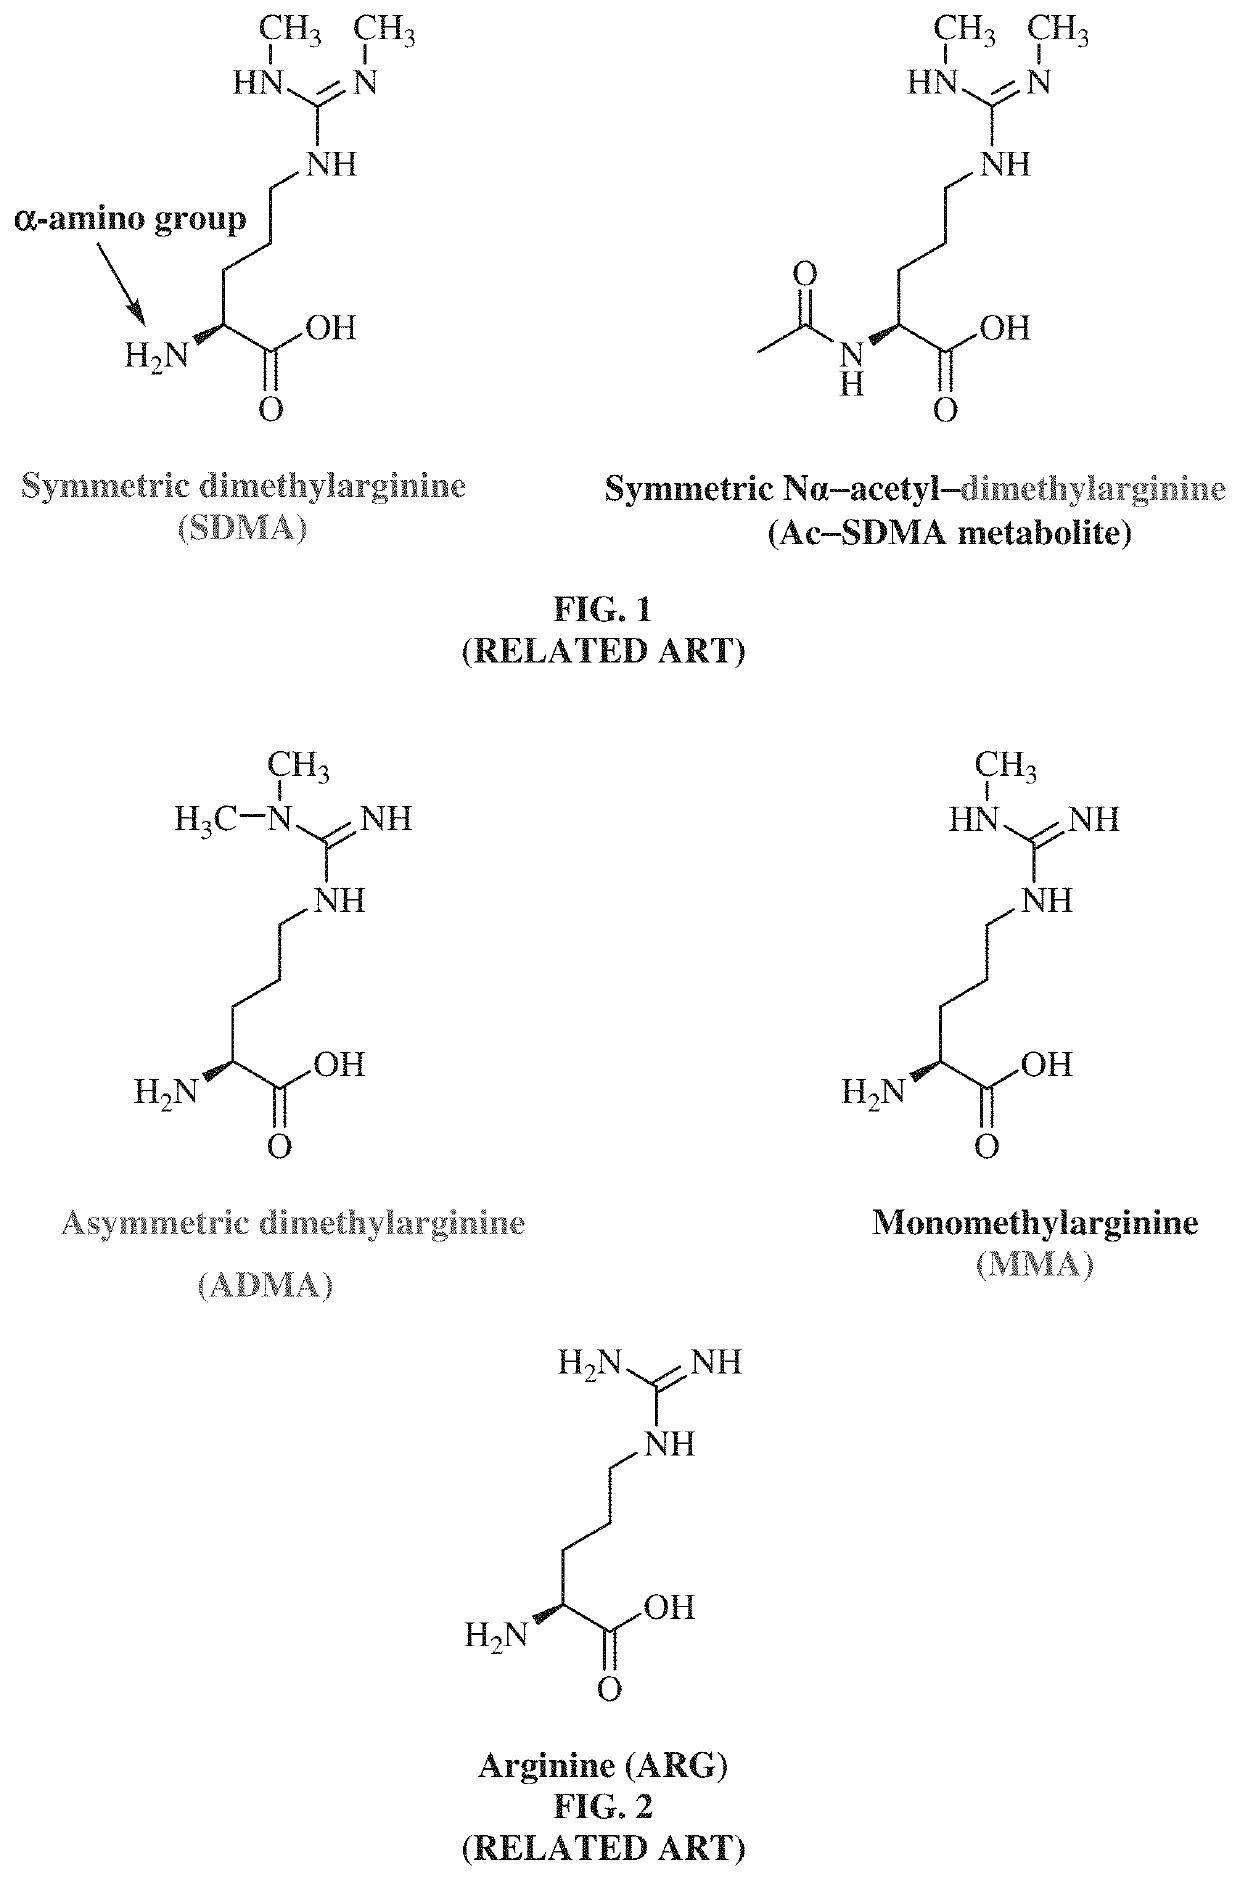 Antibodies to symmetrically dimethylated arginine analytes and use thereof